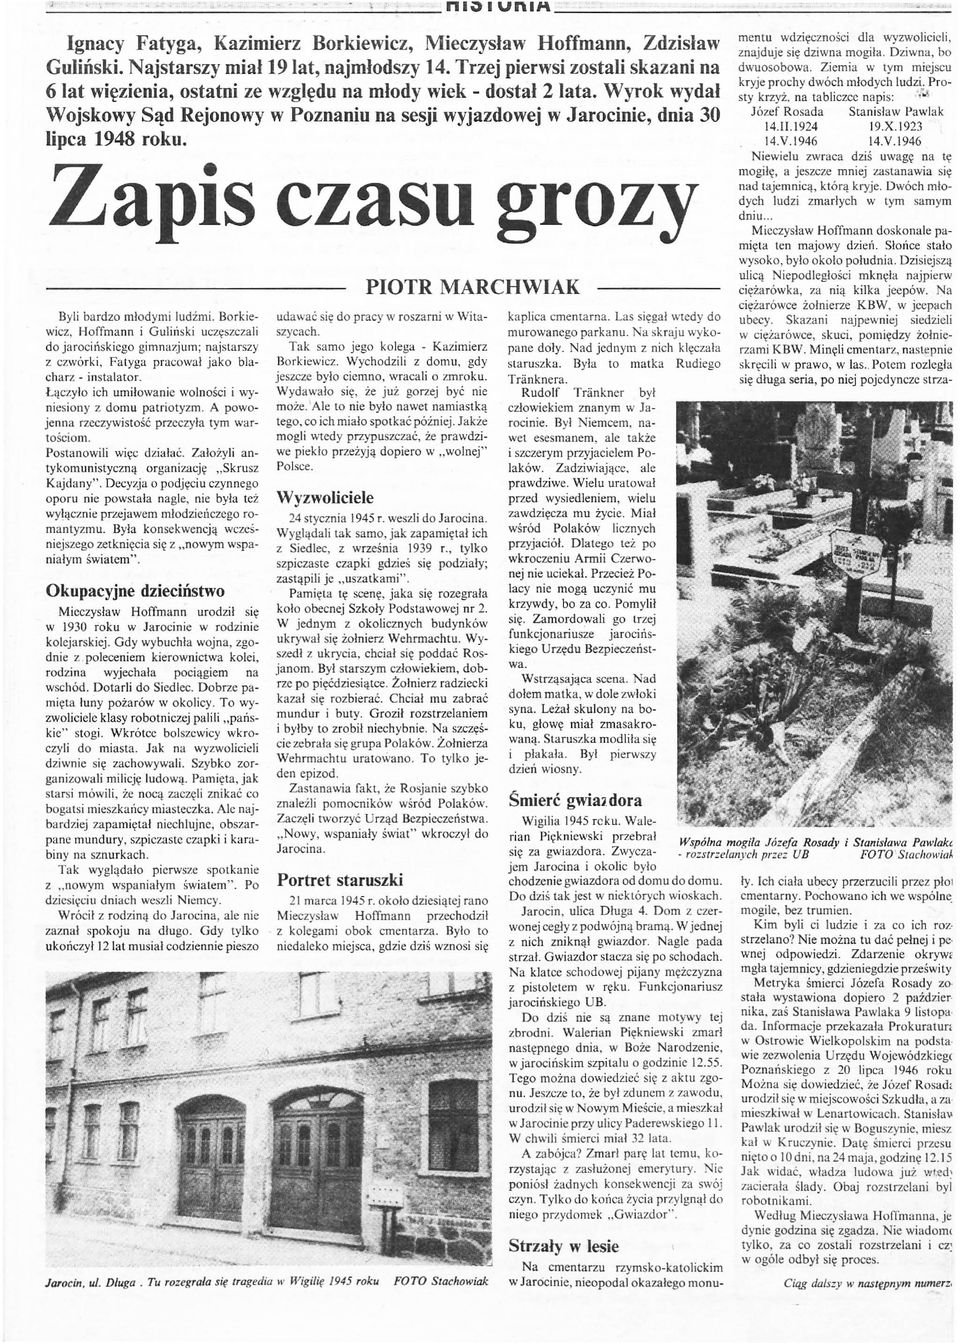 Wyrok wydał Wojskowy Sąd Rejonowy w Poznaniu na sesji wyjazdowej w Jarocinie, dnia 30 lipca 1948 roku. Zapis czasu grozy Byli bardzo młodymi l udźmi.